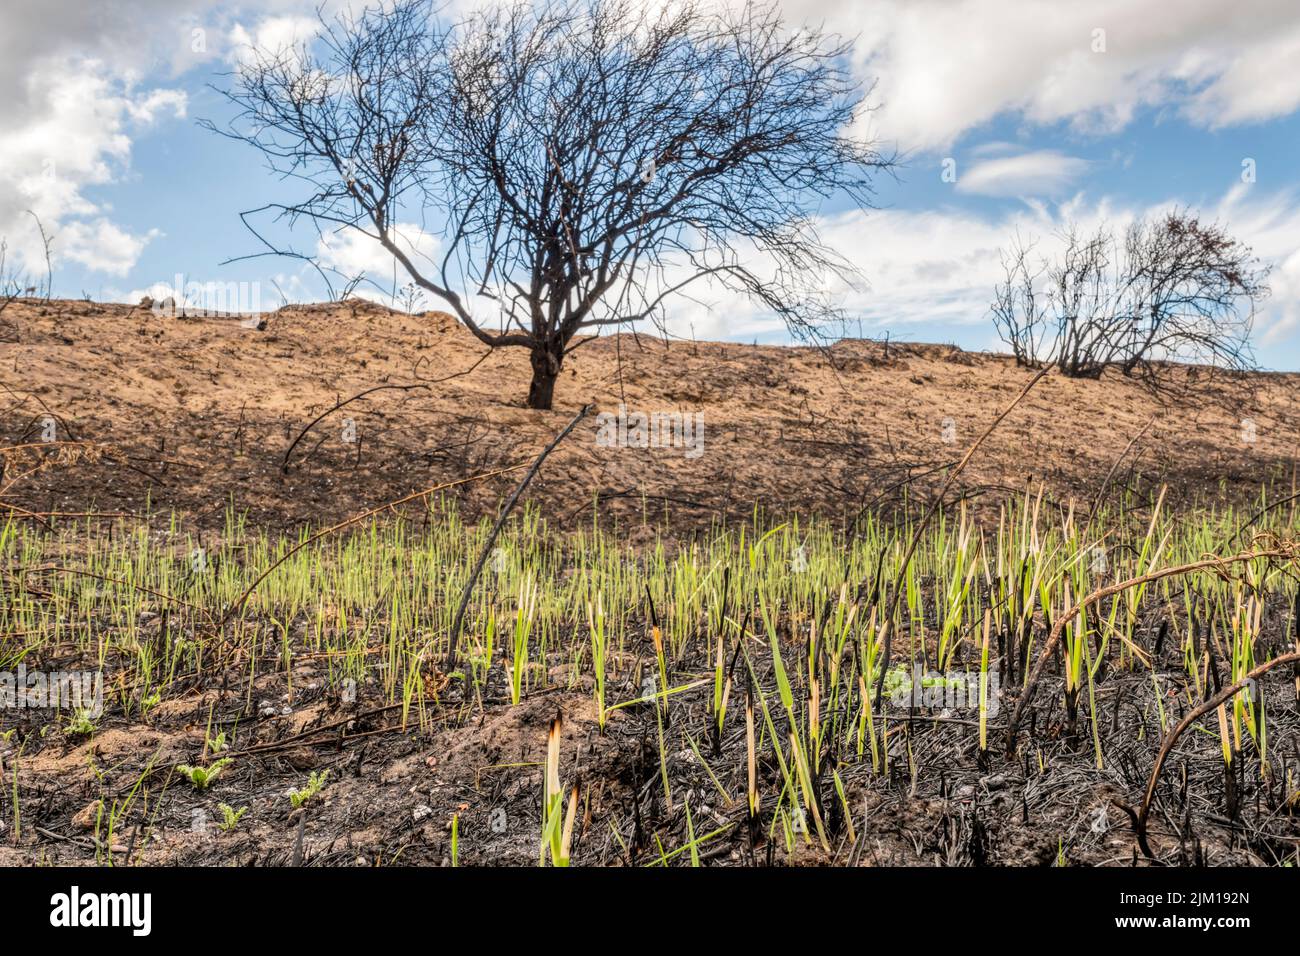 Brotes verdes que aparecen en tierra quemada 14 días después del incendio en el parque nacional de Snettisham, en la costa este del Wash, durante la ola de calor de julio de 2022. Foto de stock